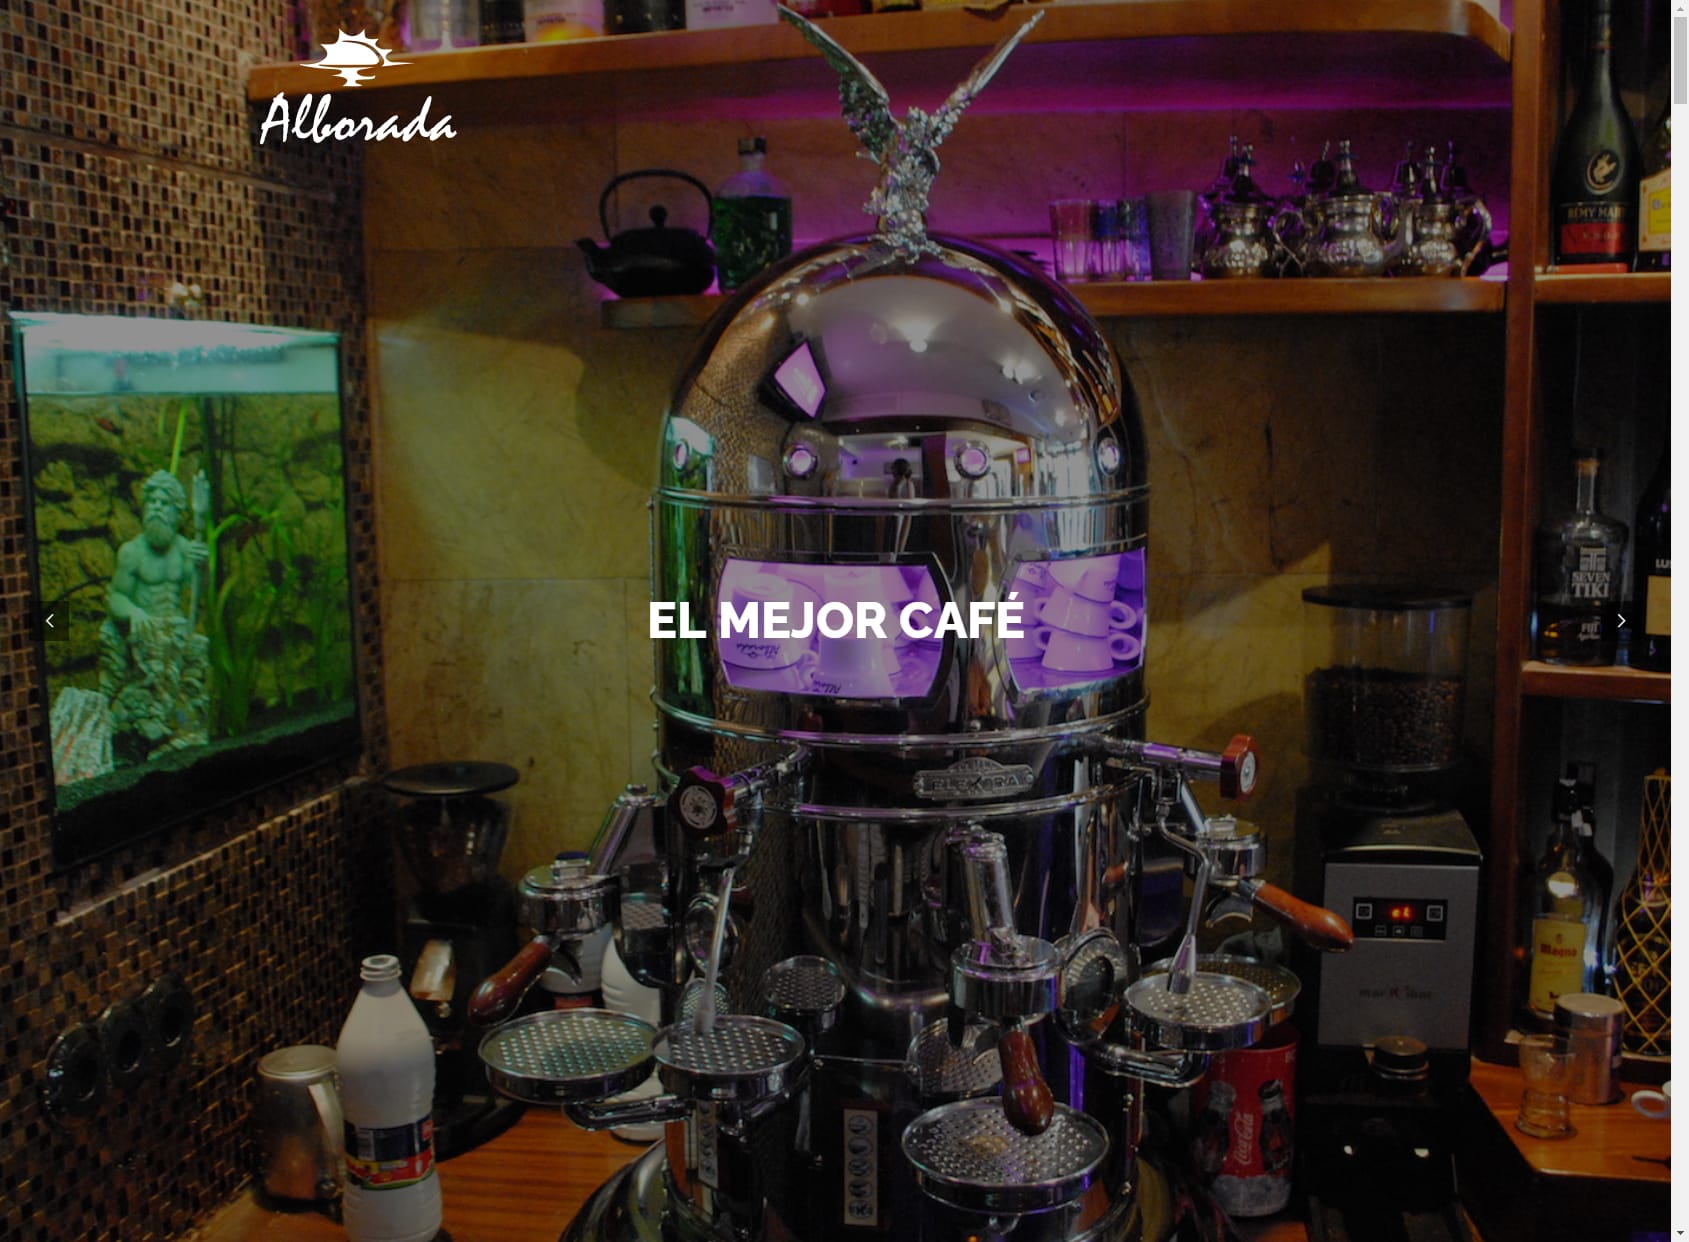 Café Bar Alborada